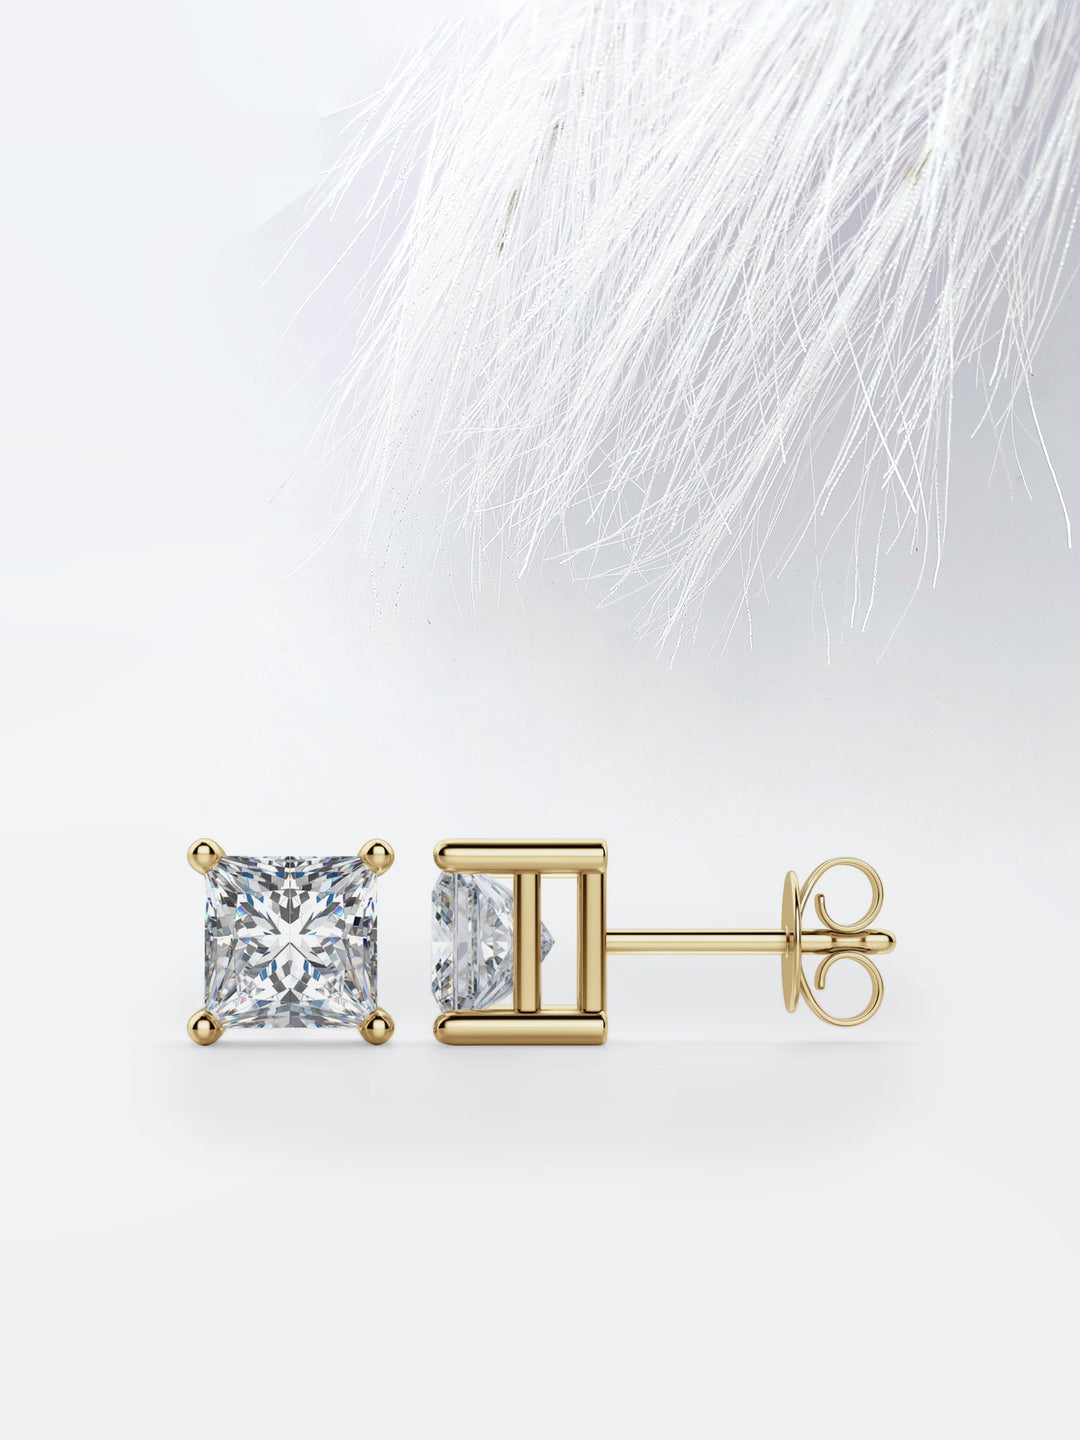 Princess Cut Moissanite Diamond Stud Earrings in 10K White Gold